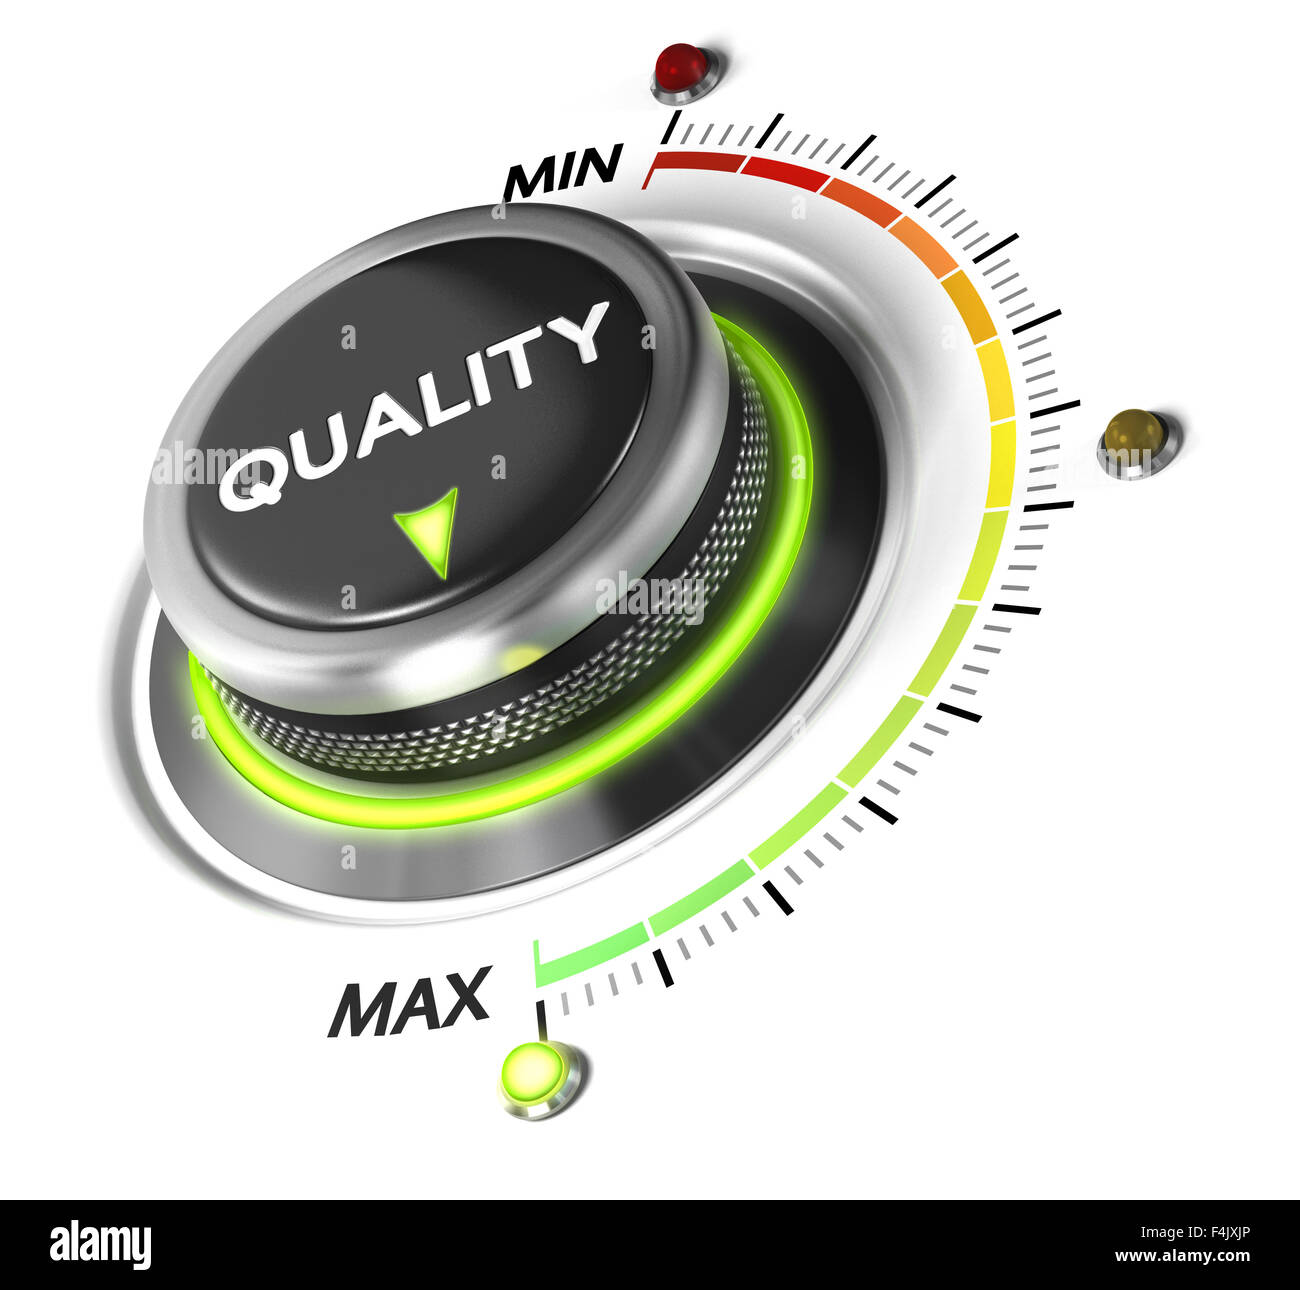 Qualität Schalter Regler auf Maximum, weißen Hintergrund und grünes Licht positioniert. Konzeptionelle Bild für Qualitätsmanagement und Verbessern Stockfoto